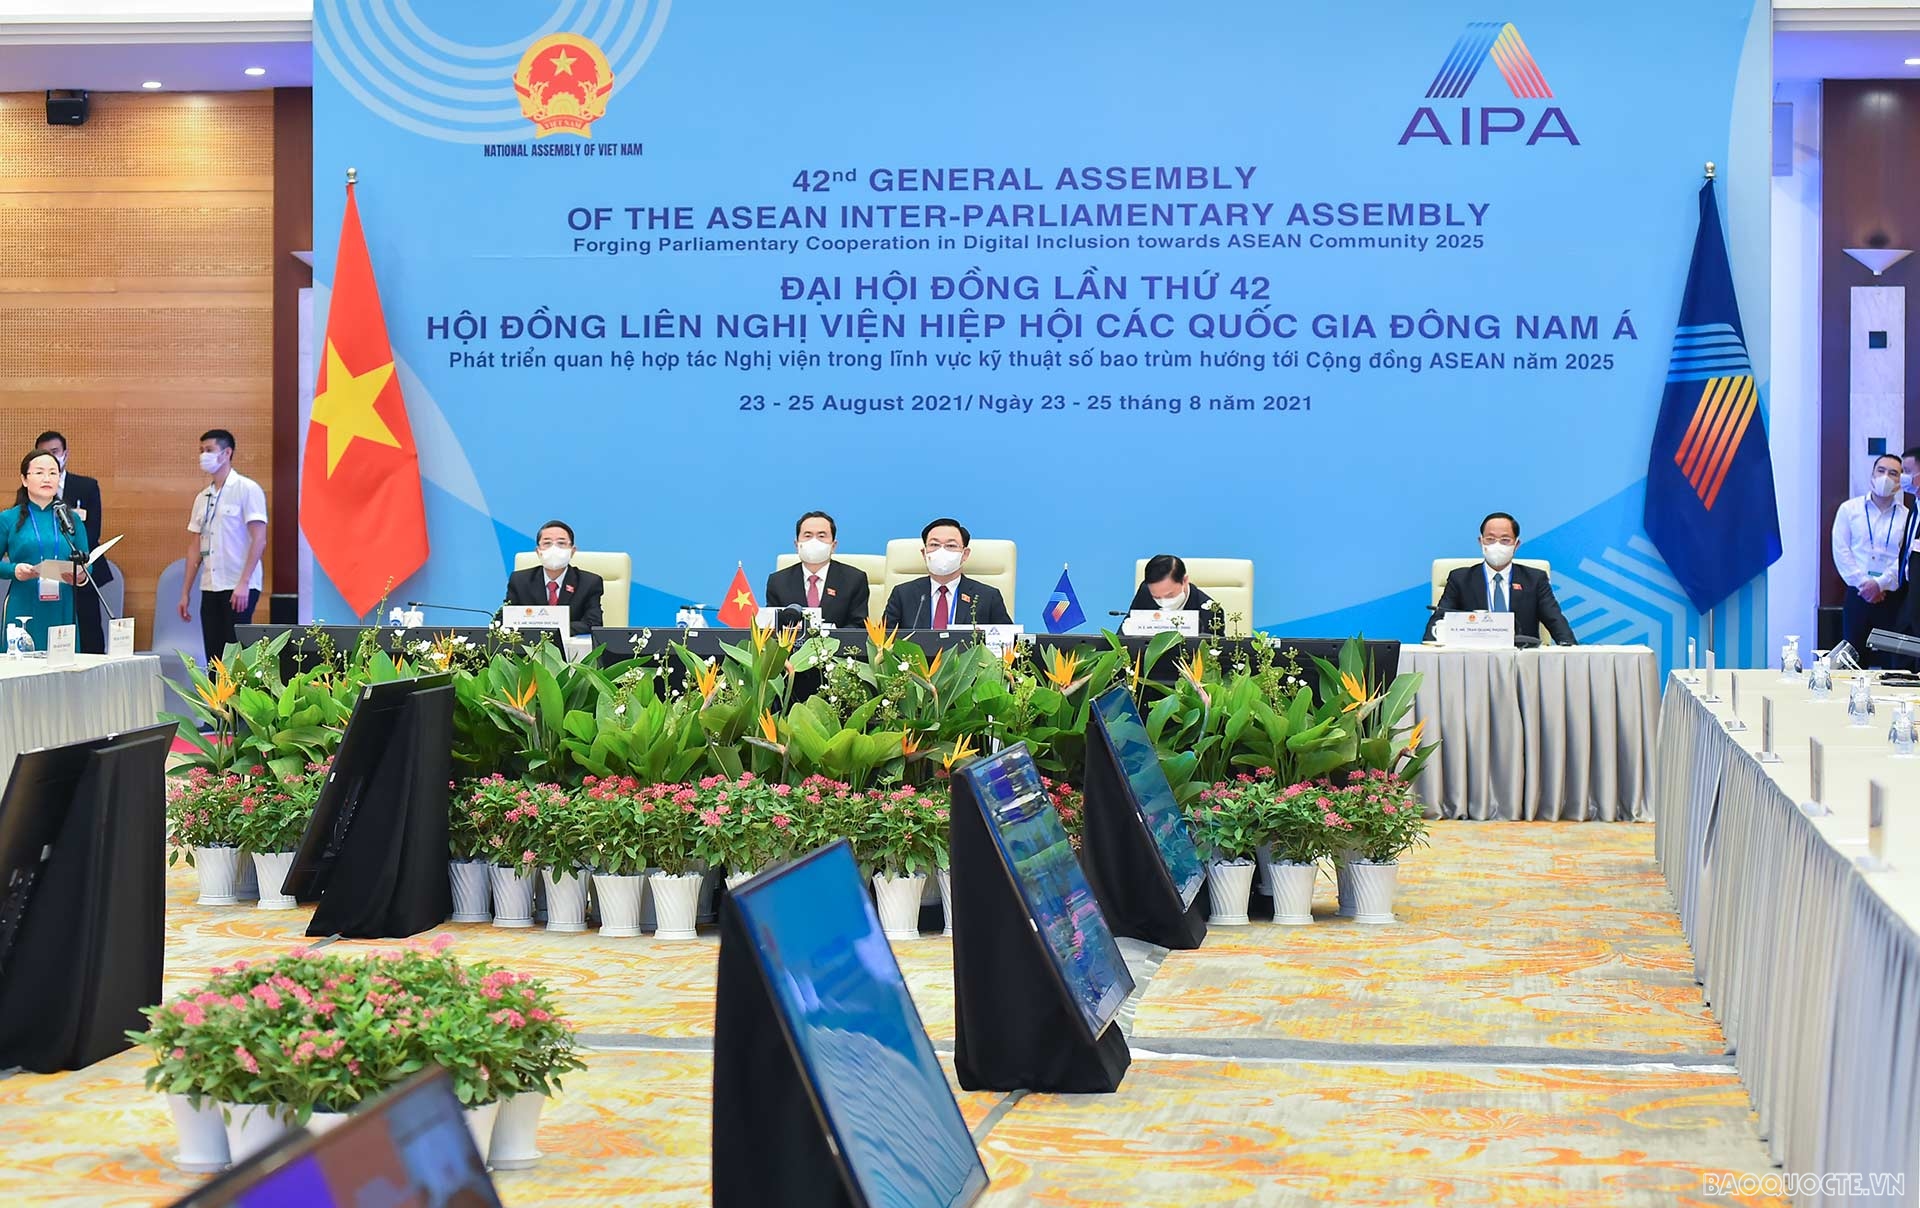 Sáng 23/8/2021, Chủ tịch Quốc hội Vương Đình Huệ dẫn đầu đoàn đại biểu cấp cao Việt Nam dự Phiên họp khai mạc AIPA 42. (Ảnh: Tuấn Anh)